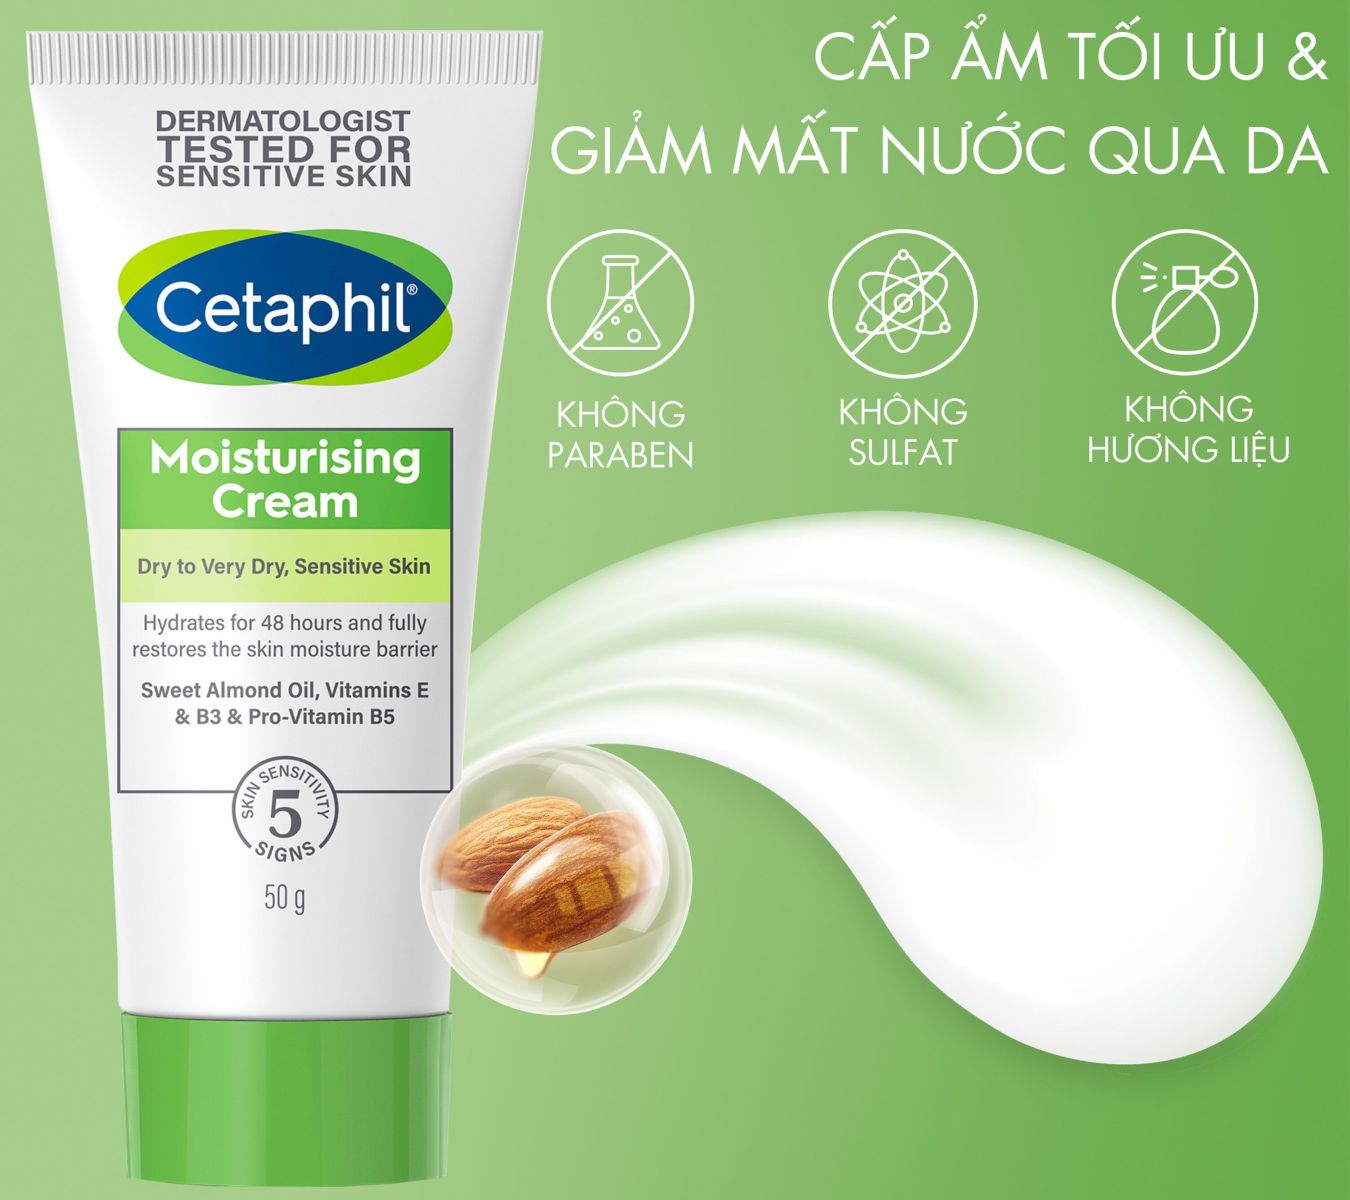 Có Nên Dùng Kem Dưỡng Ẩm Cetaphil Moisturizing Cream?. Hình ảnh 1